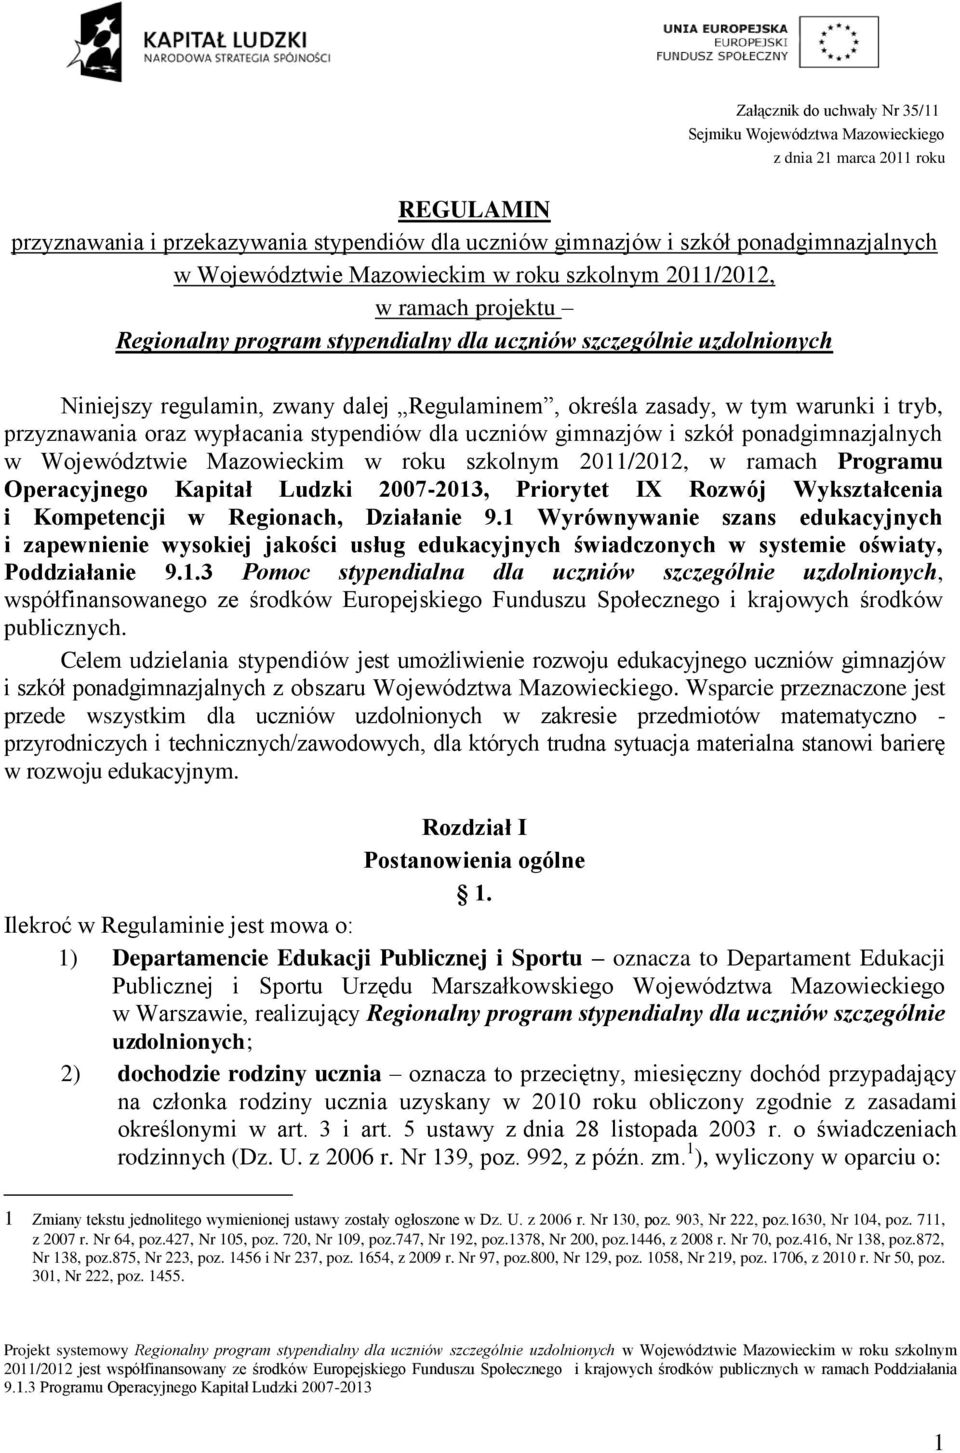 zasady, w tym warunki i tryb, przyznawania oraz wypłacania stypendiów dla uczniów gimnazjów i szkół ponadgimnazjalnych w Województwie Mazowieckim w roku szkolnym 2011/2012, w ramach Programu